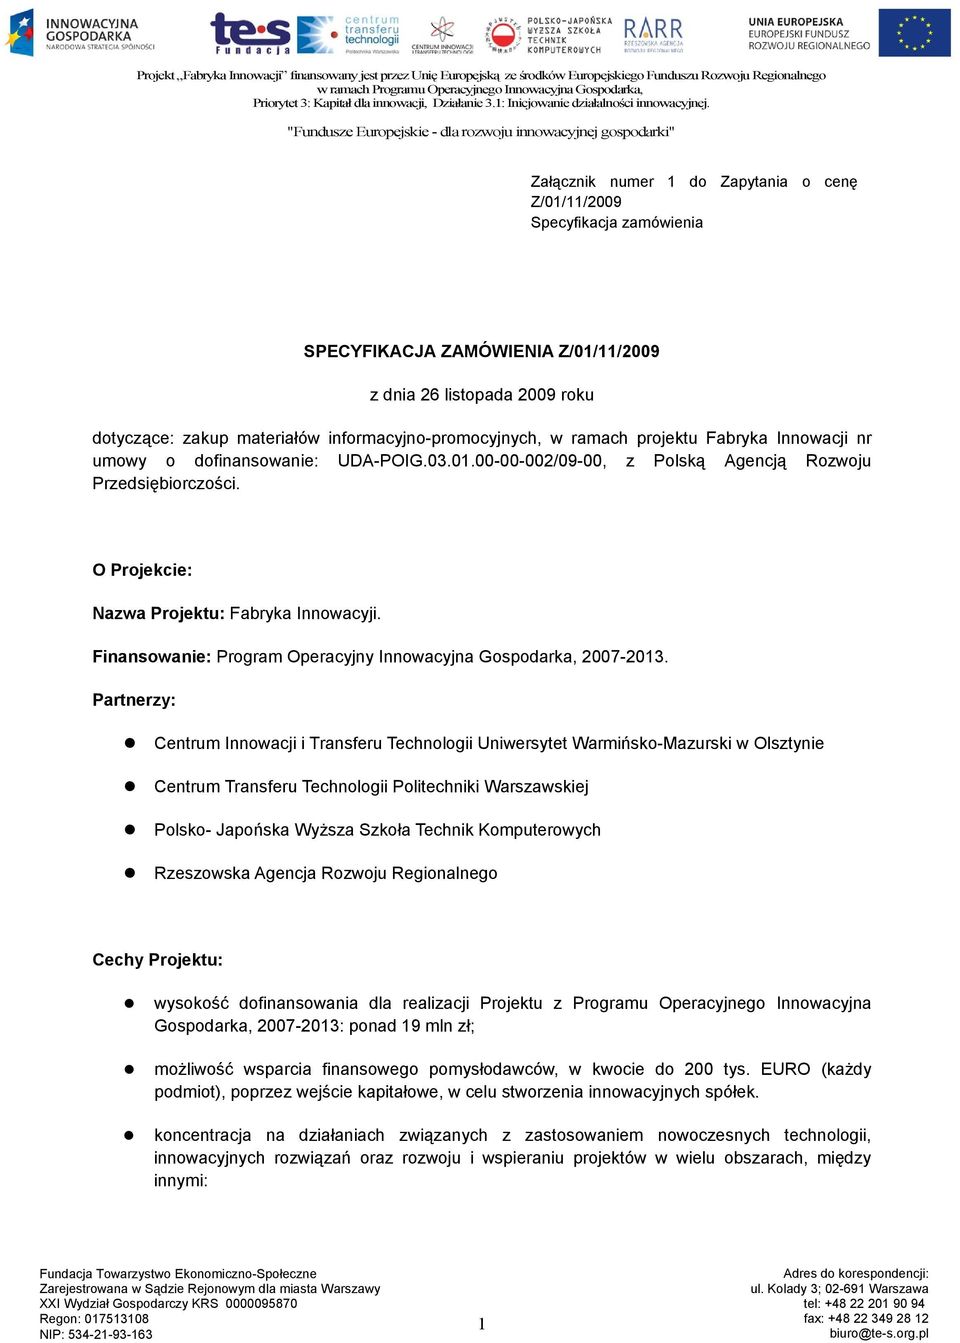 Finansowanie: Program Operacyjny Innowacyjna Gospodarka, 2007-2013.